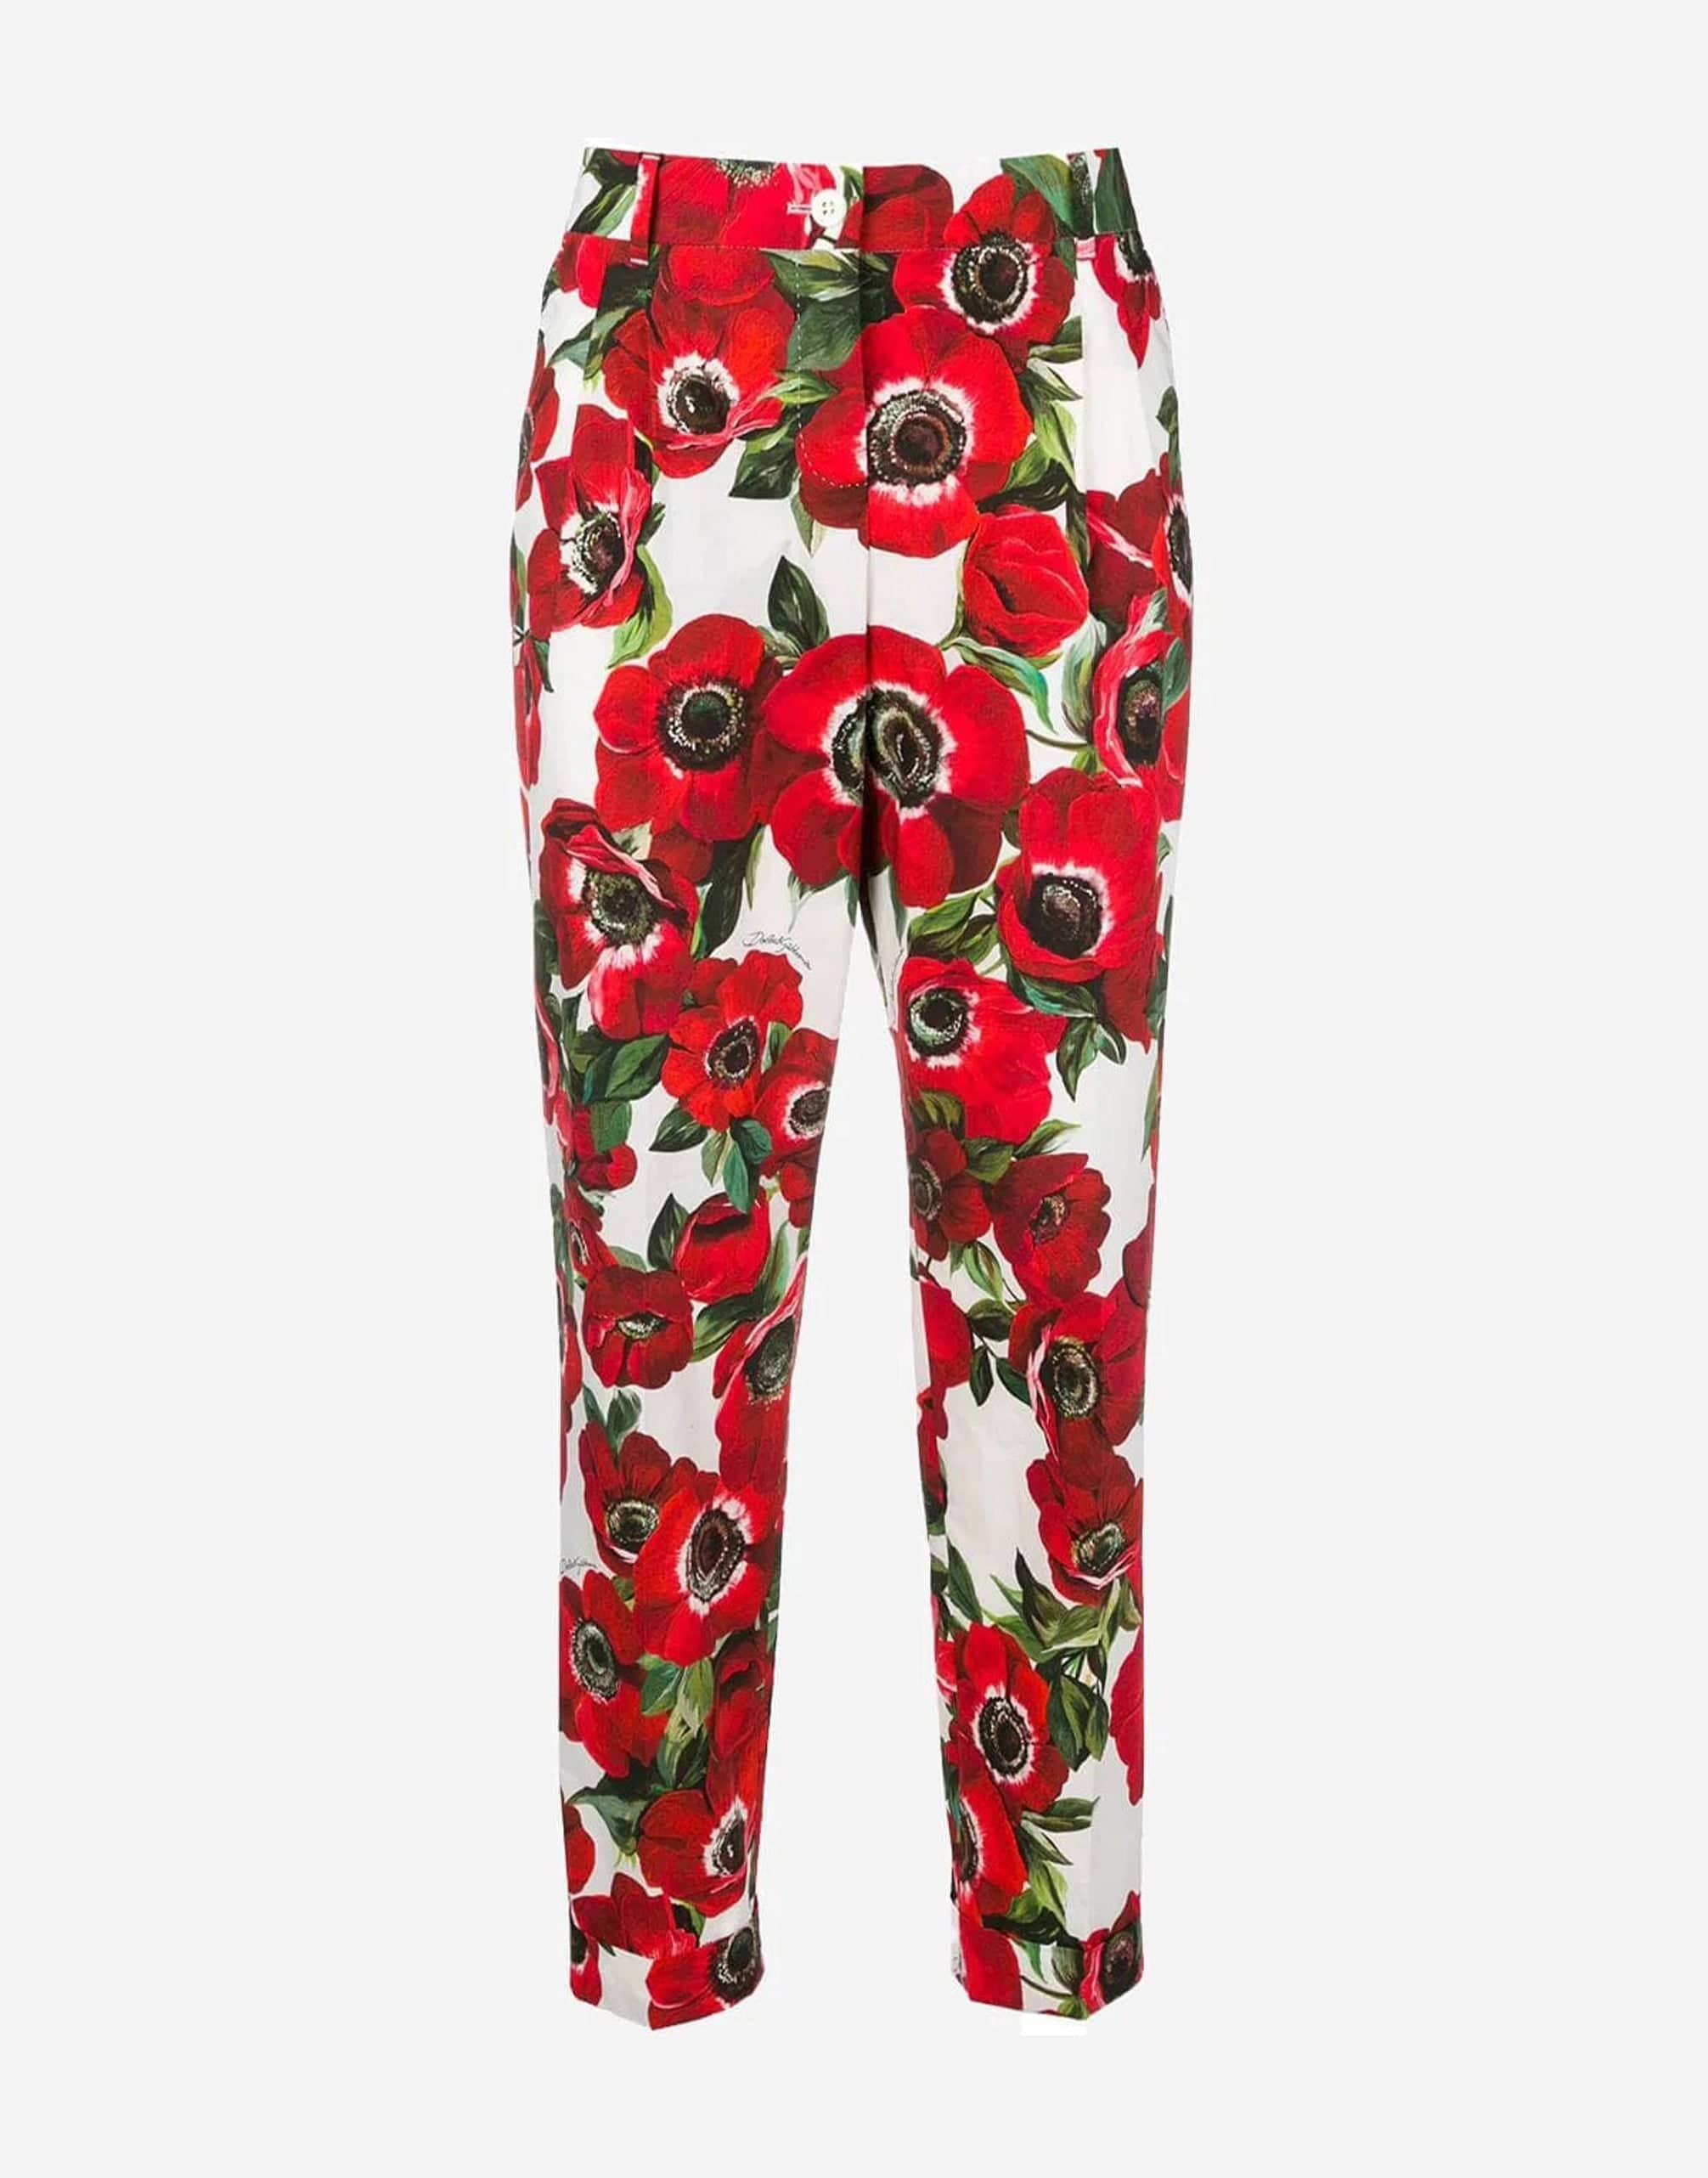 Dolce & Gabbana Floral-Print Cotton Pants